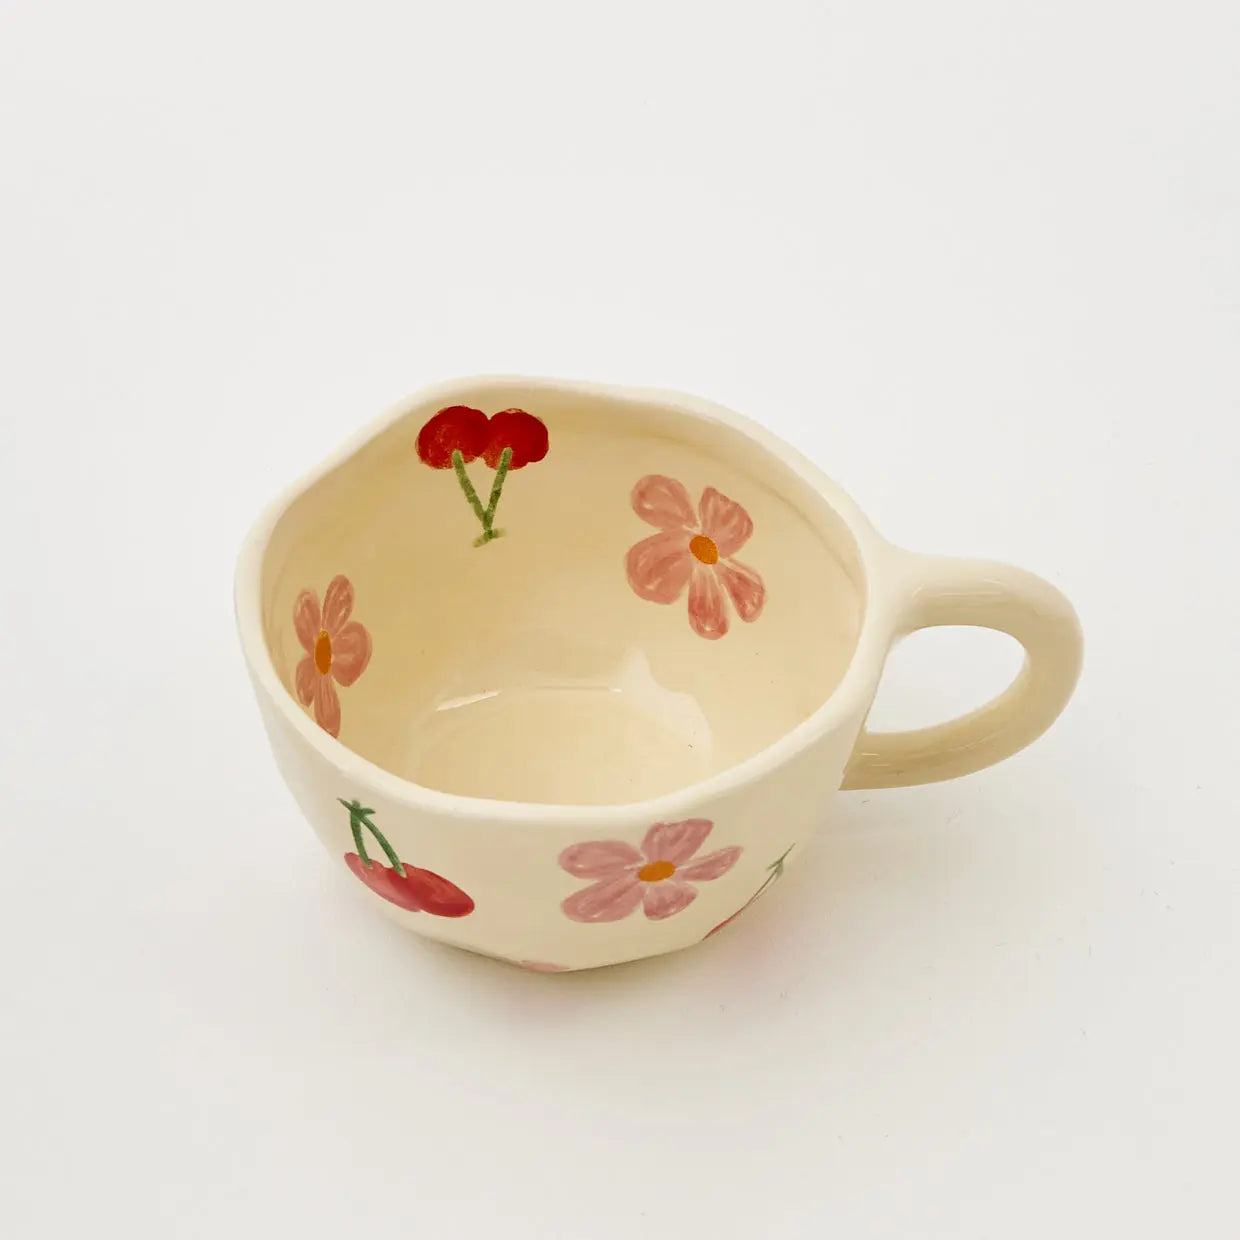 Painted Cherry Ceramic Mug Red - GigiandTom